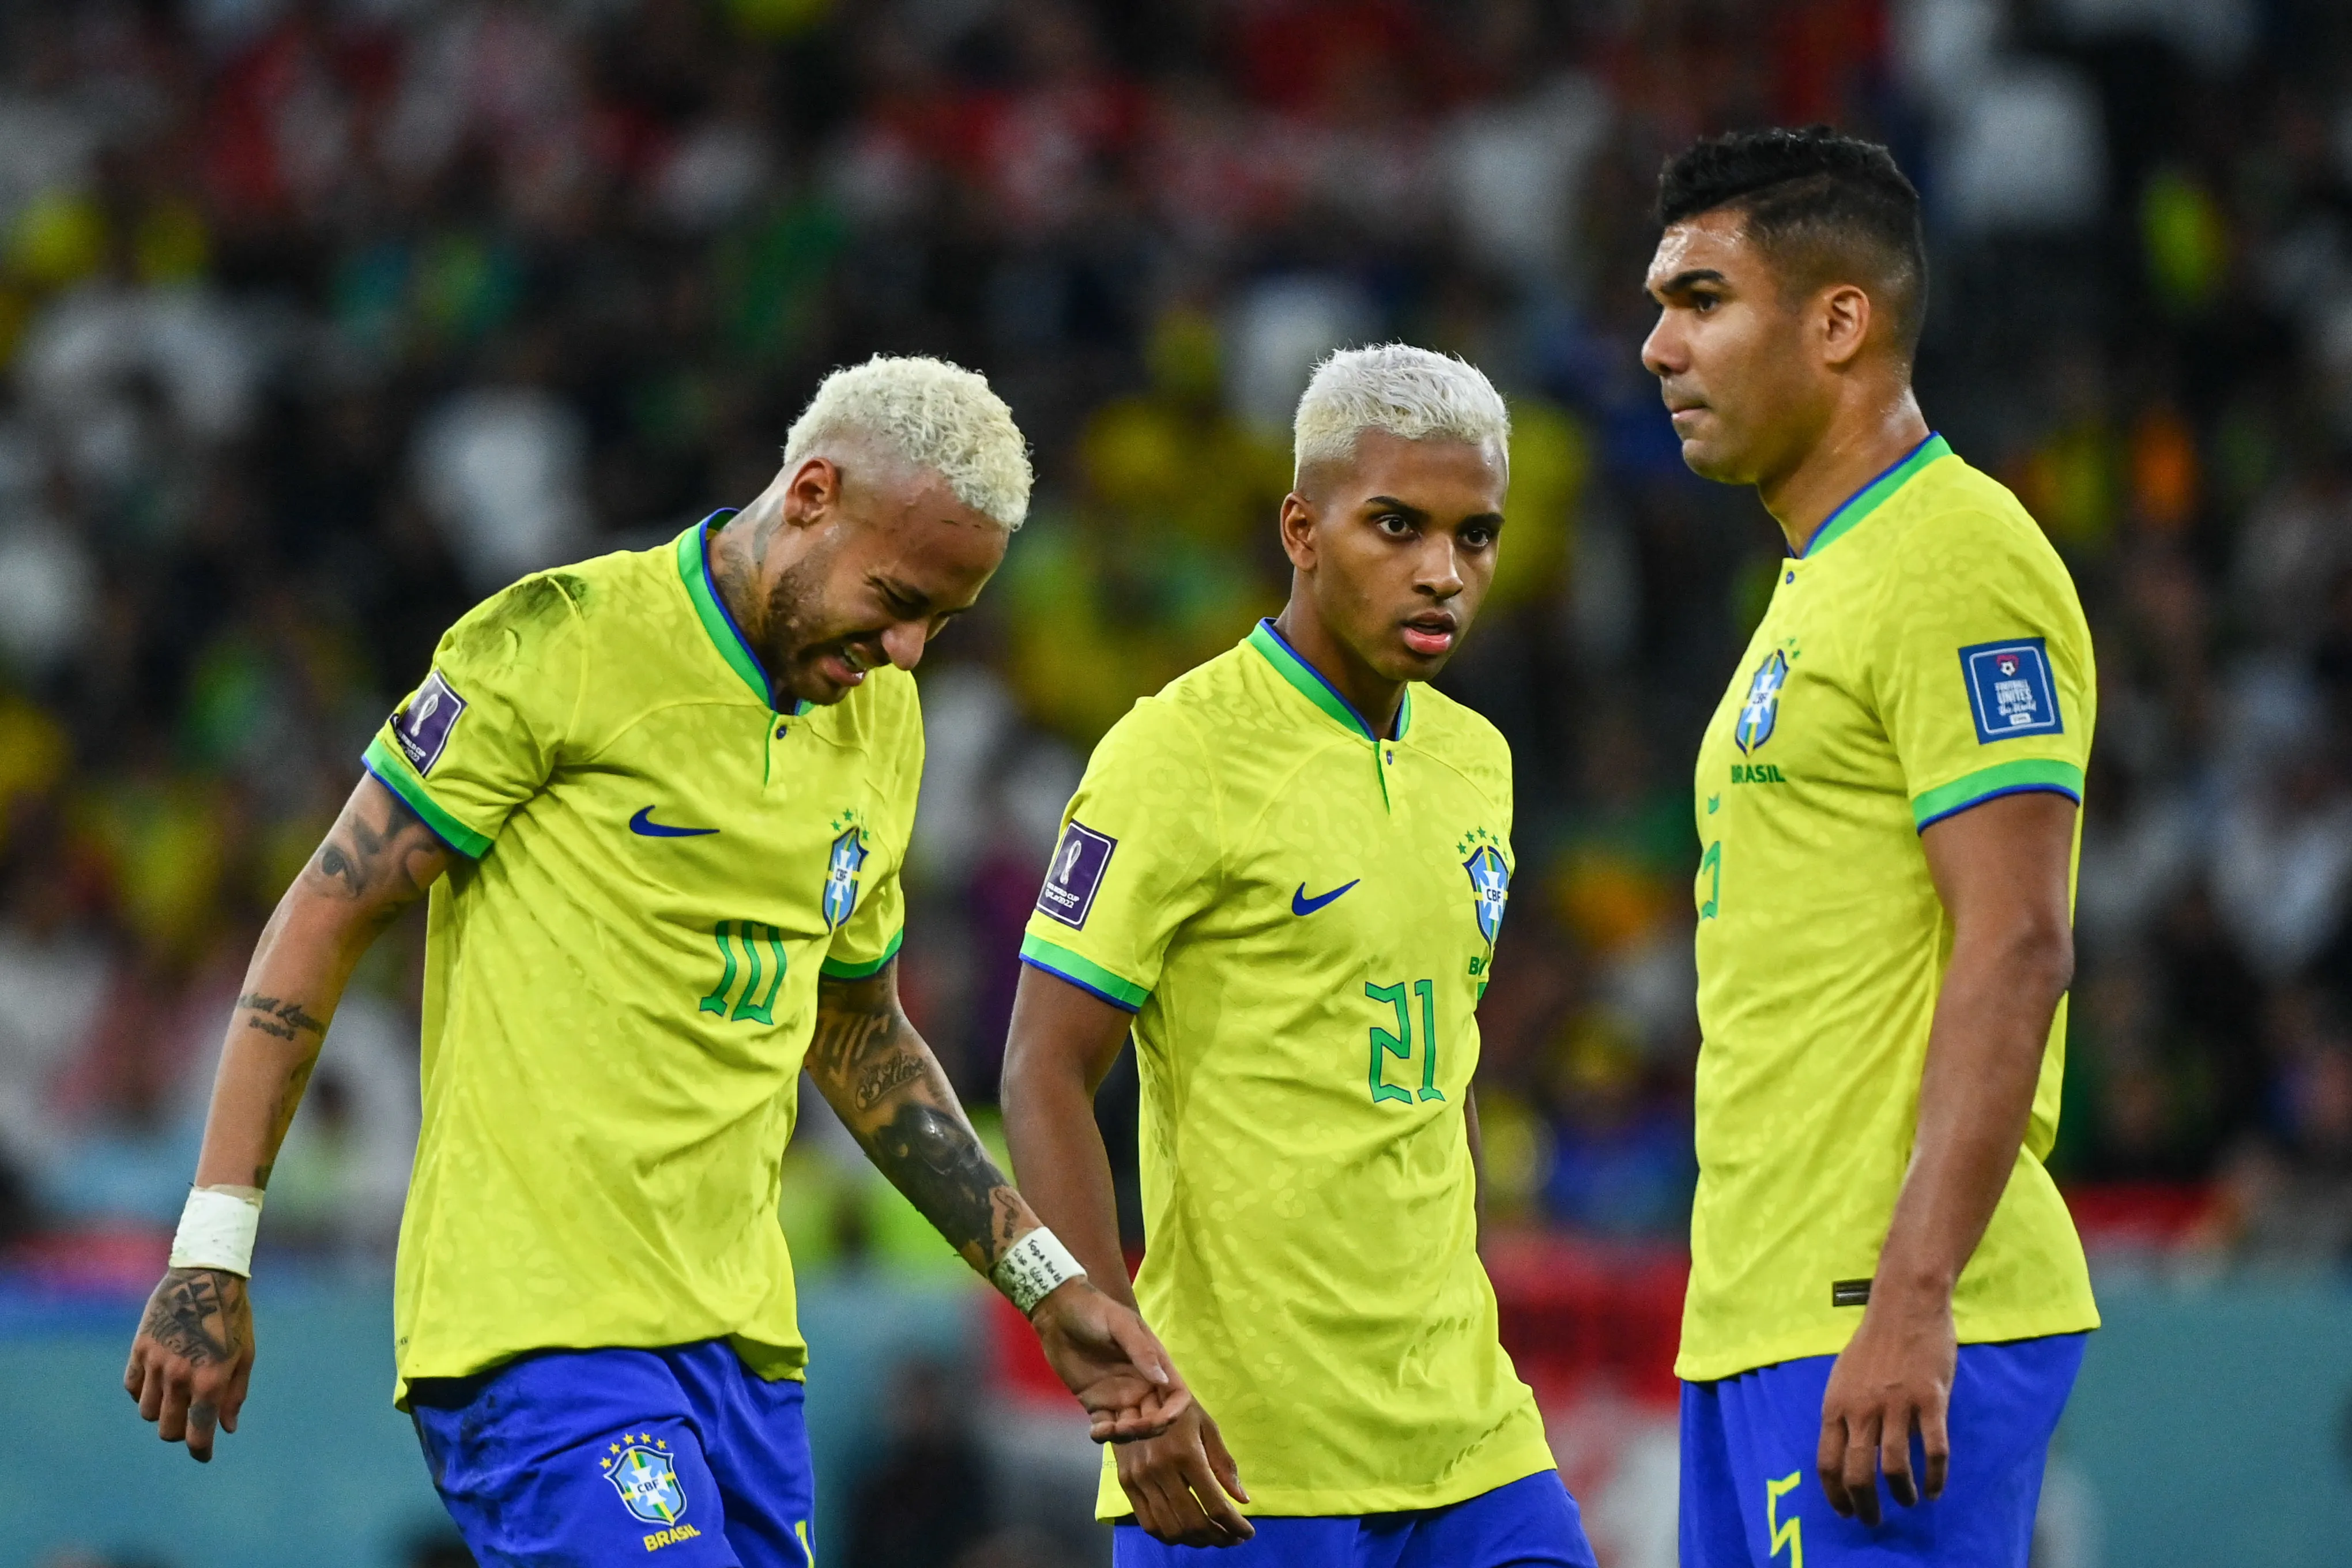 Fin de parcours pour le Brésil lors de ce Mondial 2022